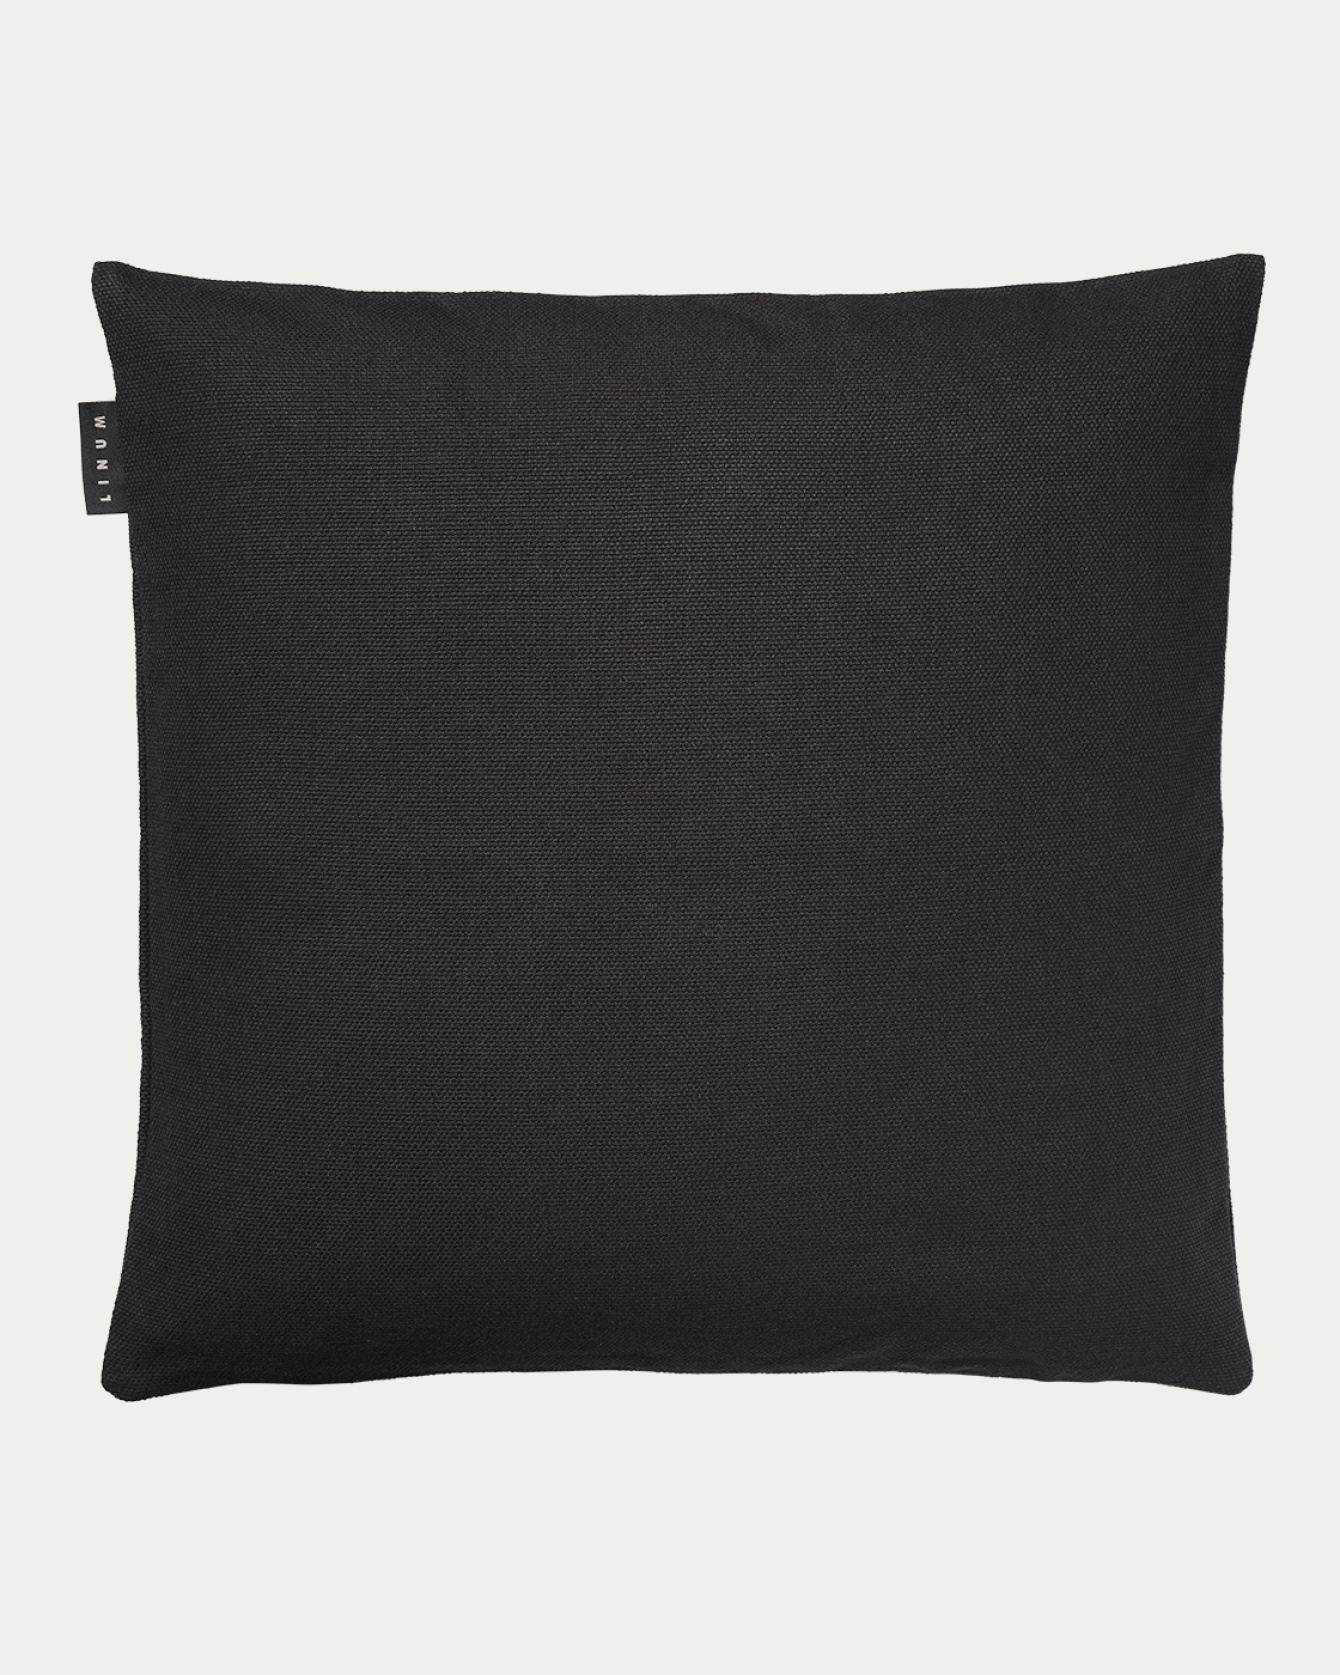 PEPPER Cushion cover 60x60 cm Black melange